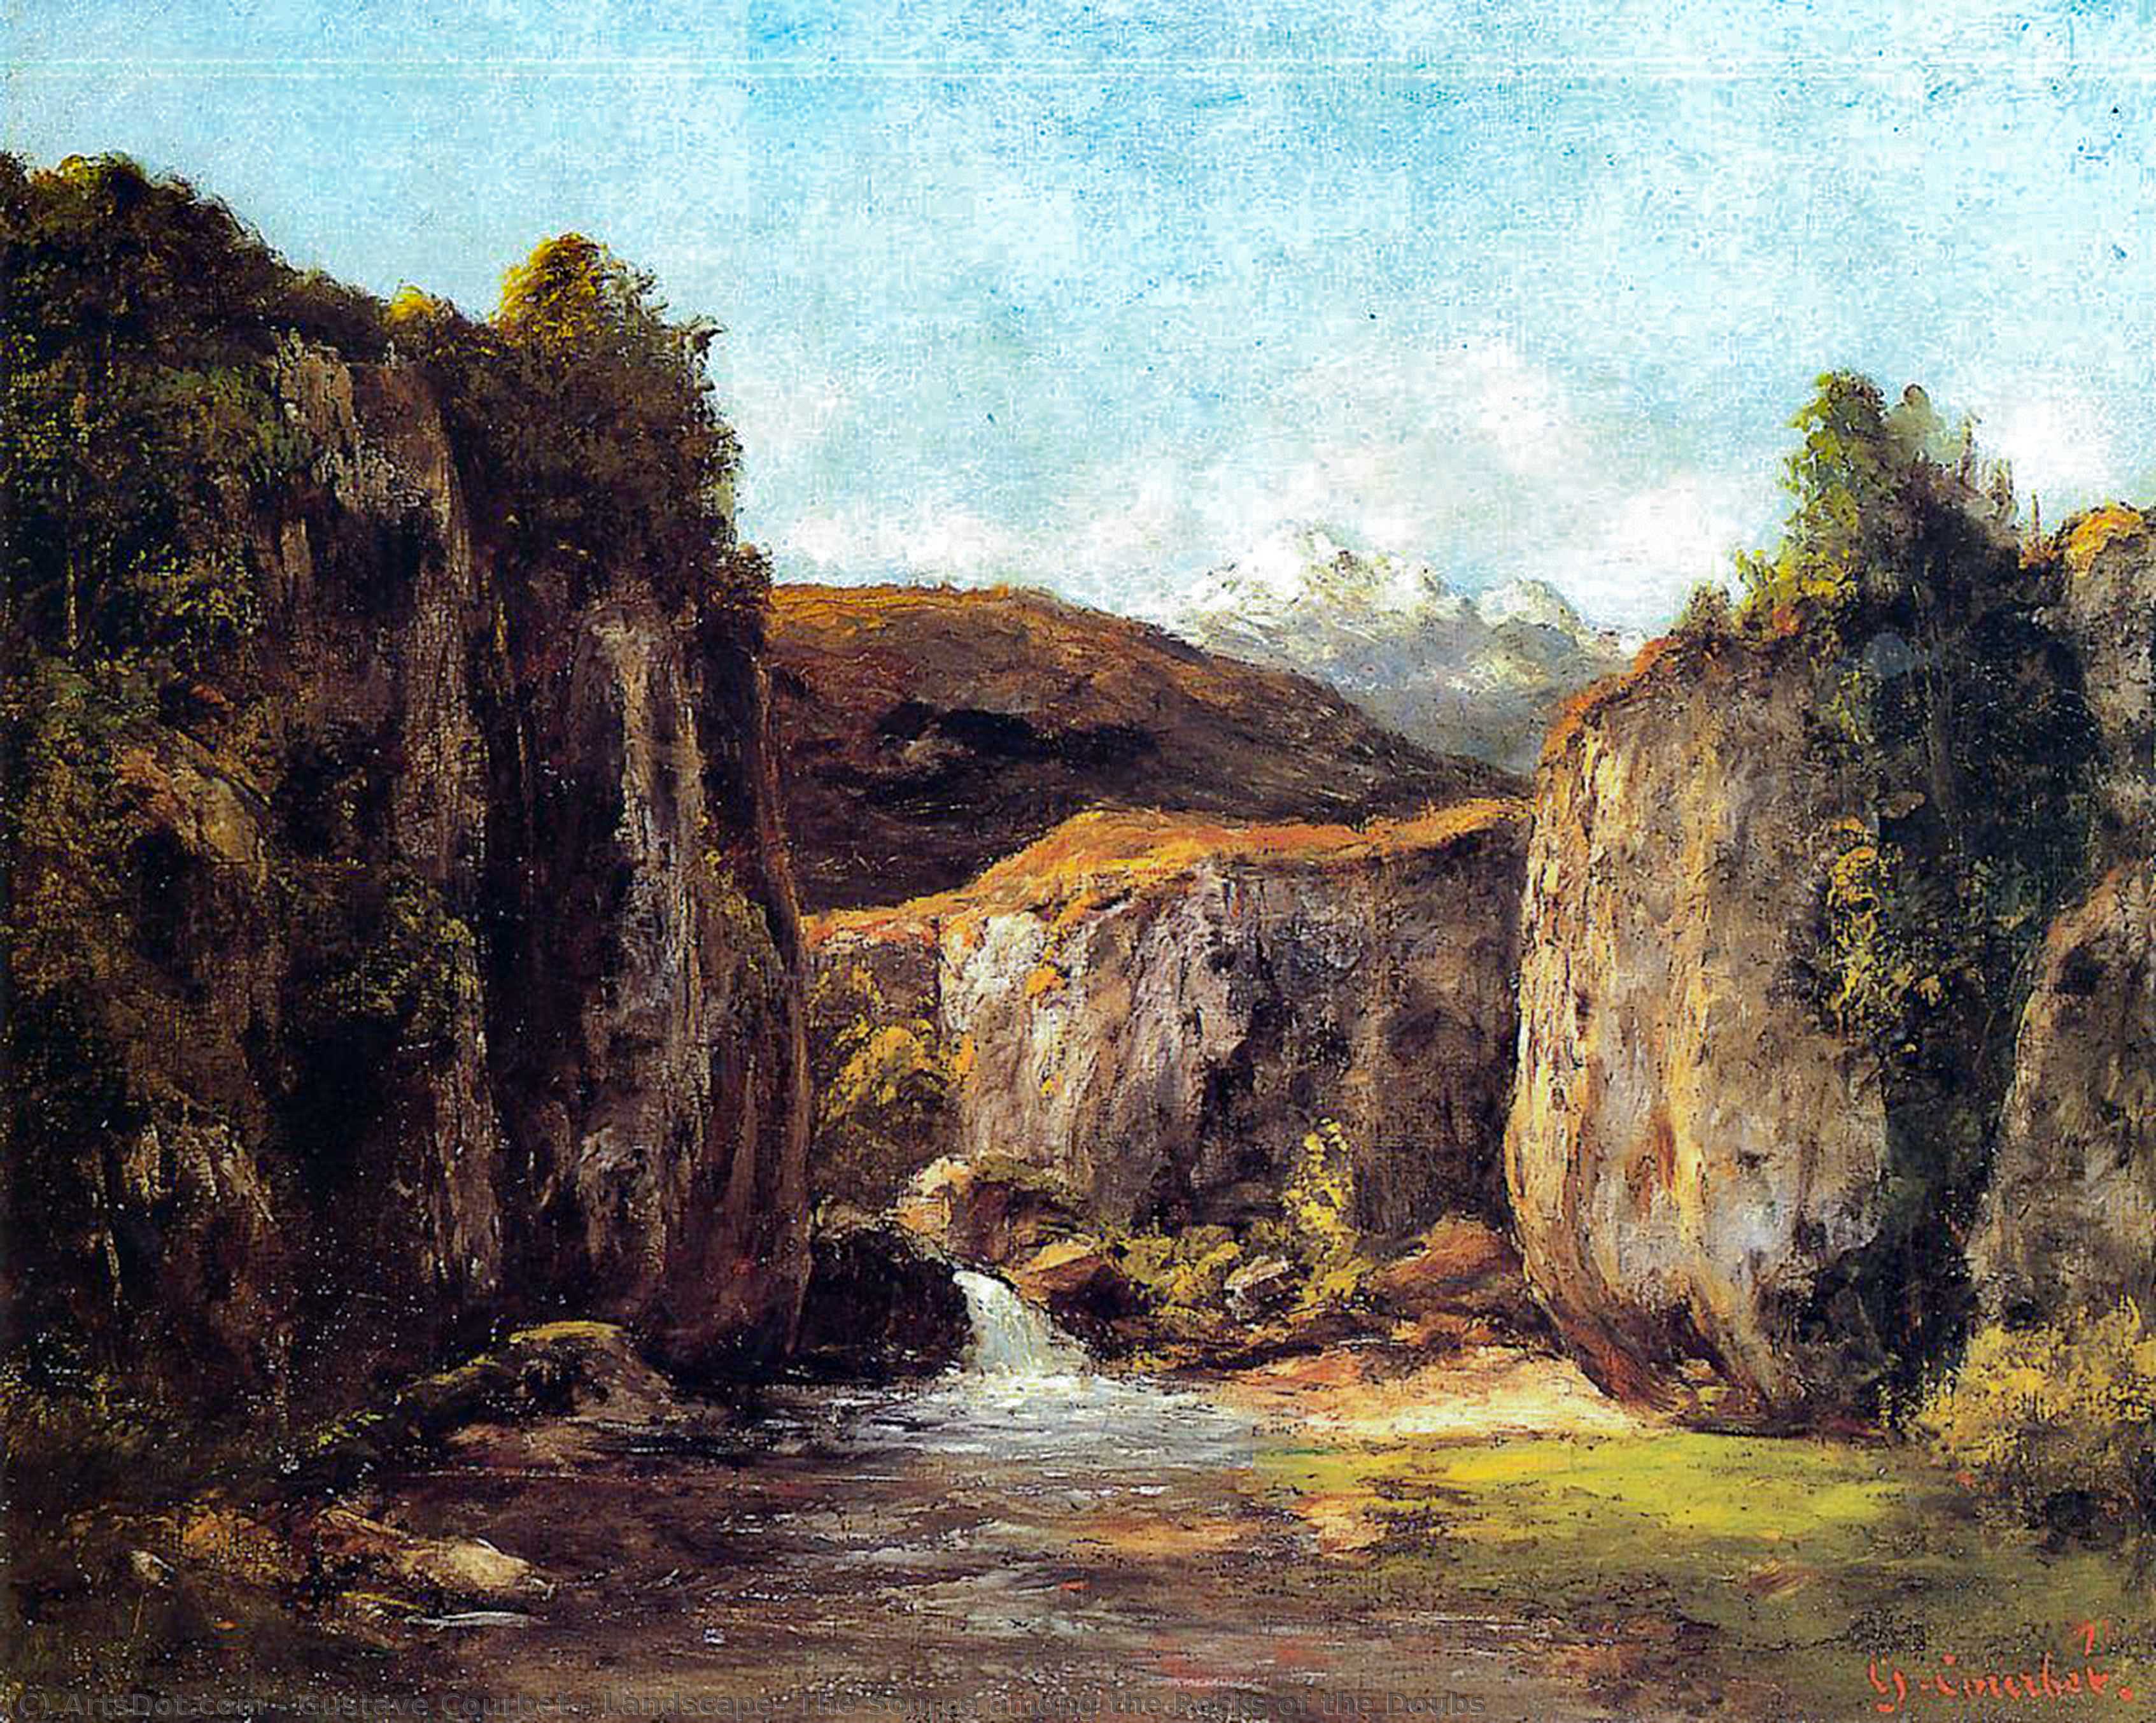 Achat Réplique De Peinture Paysage: La Source parmi les Rocheuses des Doubs, 1871 de Gustave Courbet (1819-1877, France) | ArtsDot.com